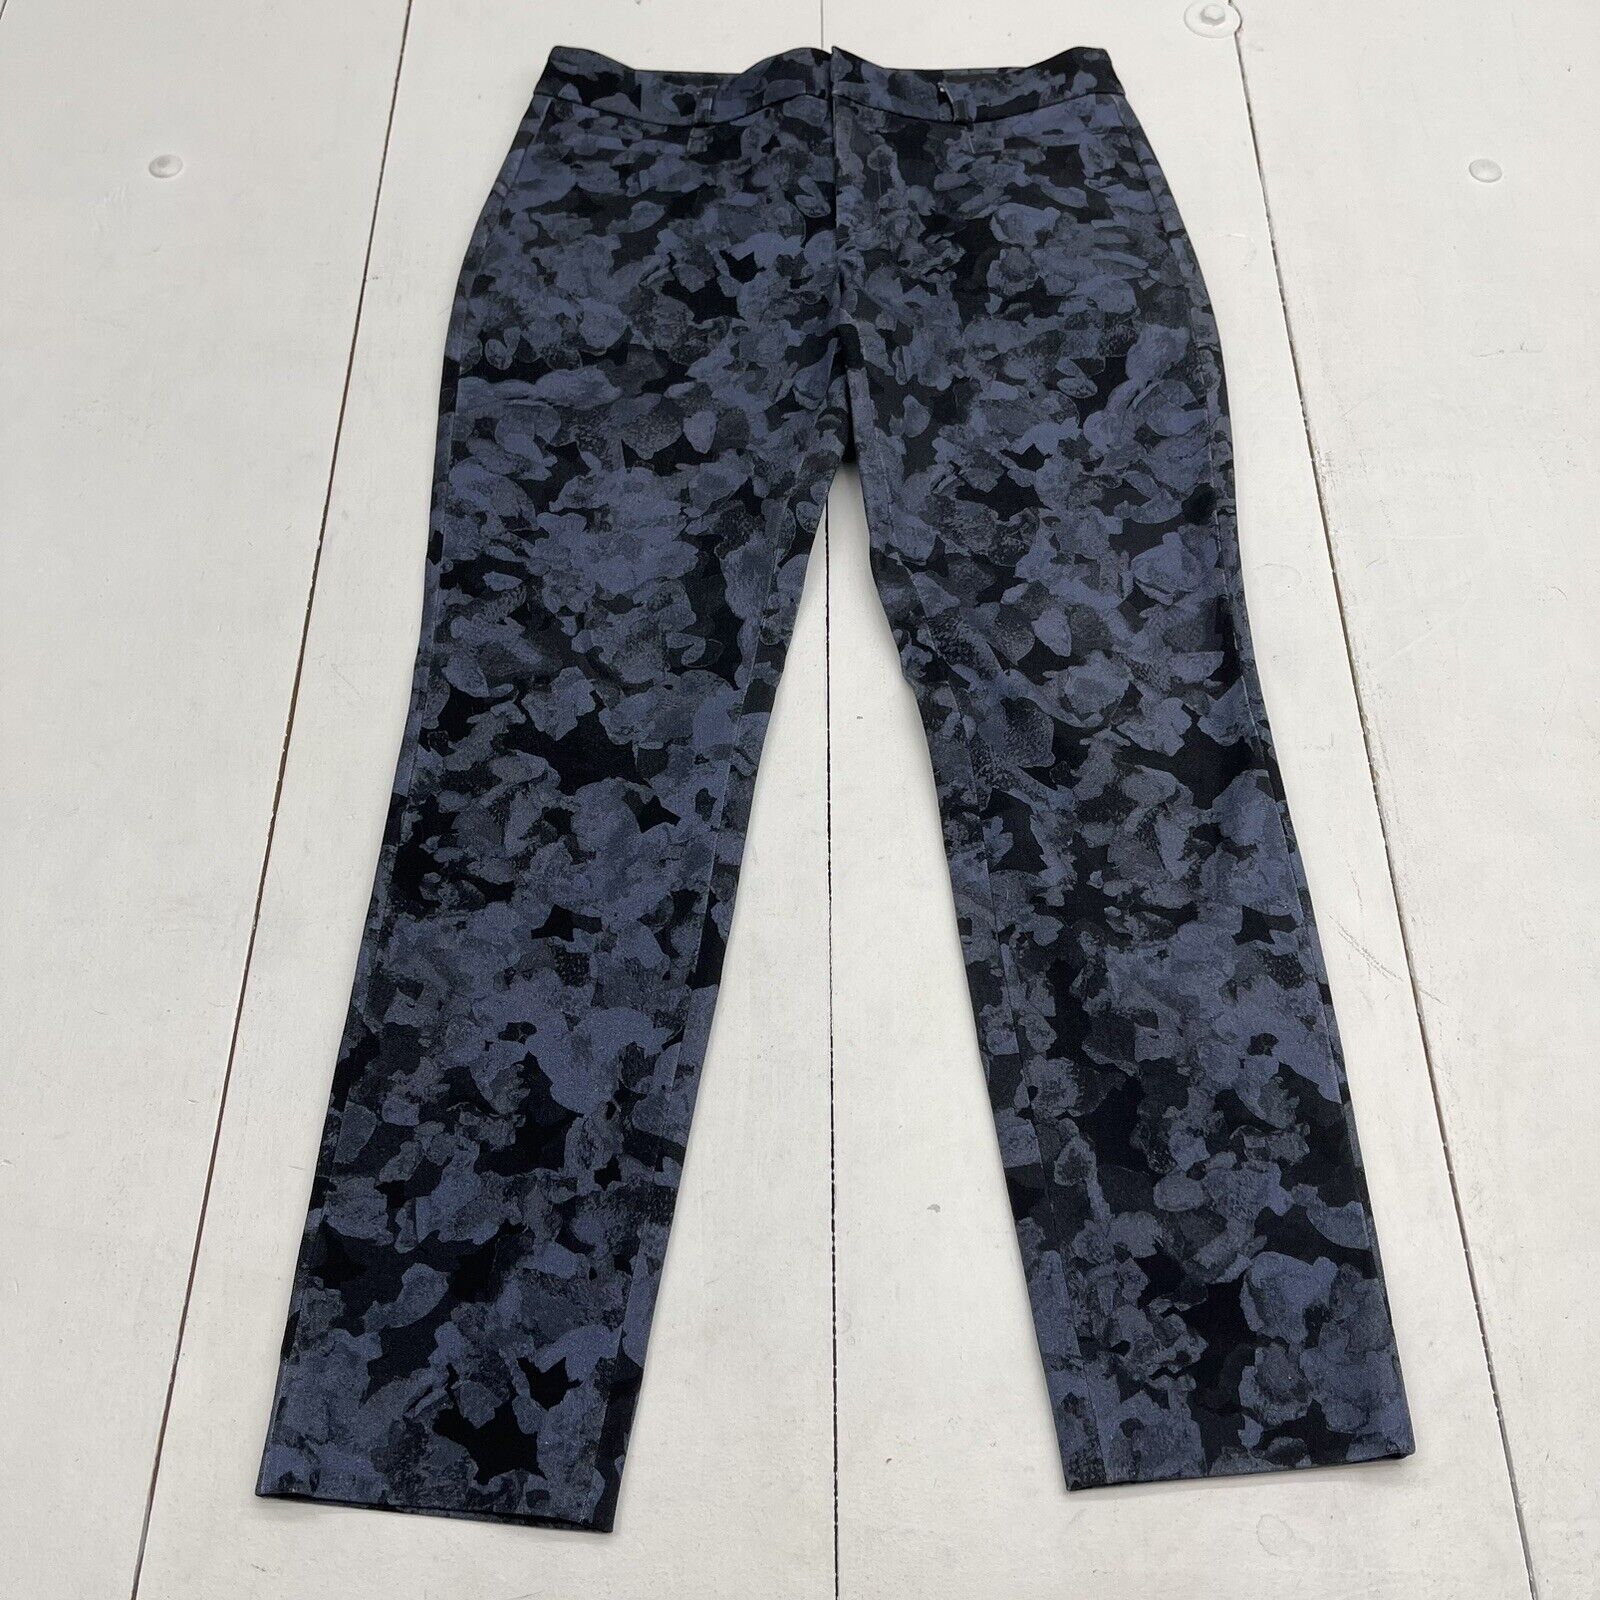 Banana Republic Sloan Blue Printed Pants Women's Size 4 - beyond exchange